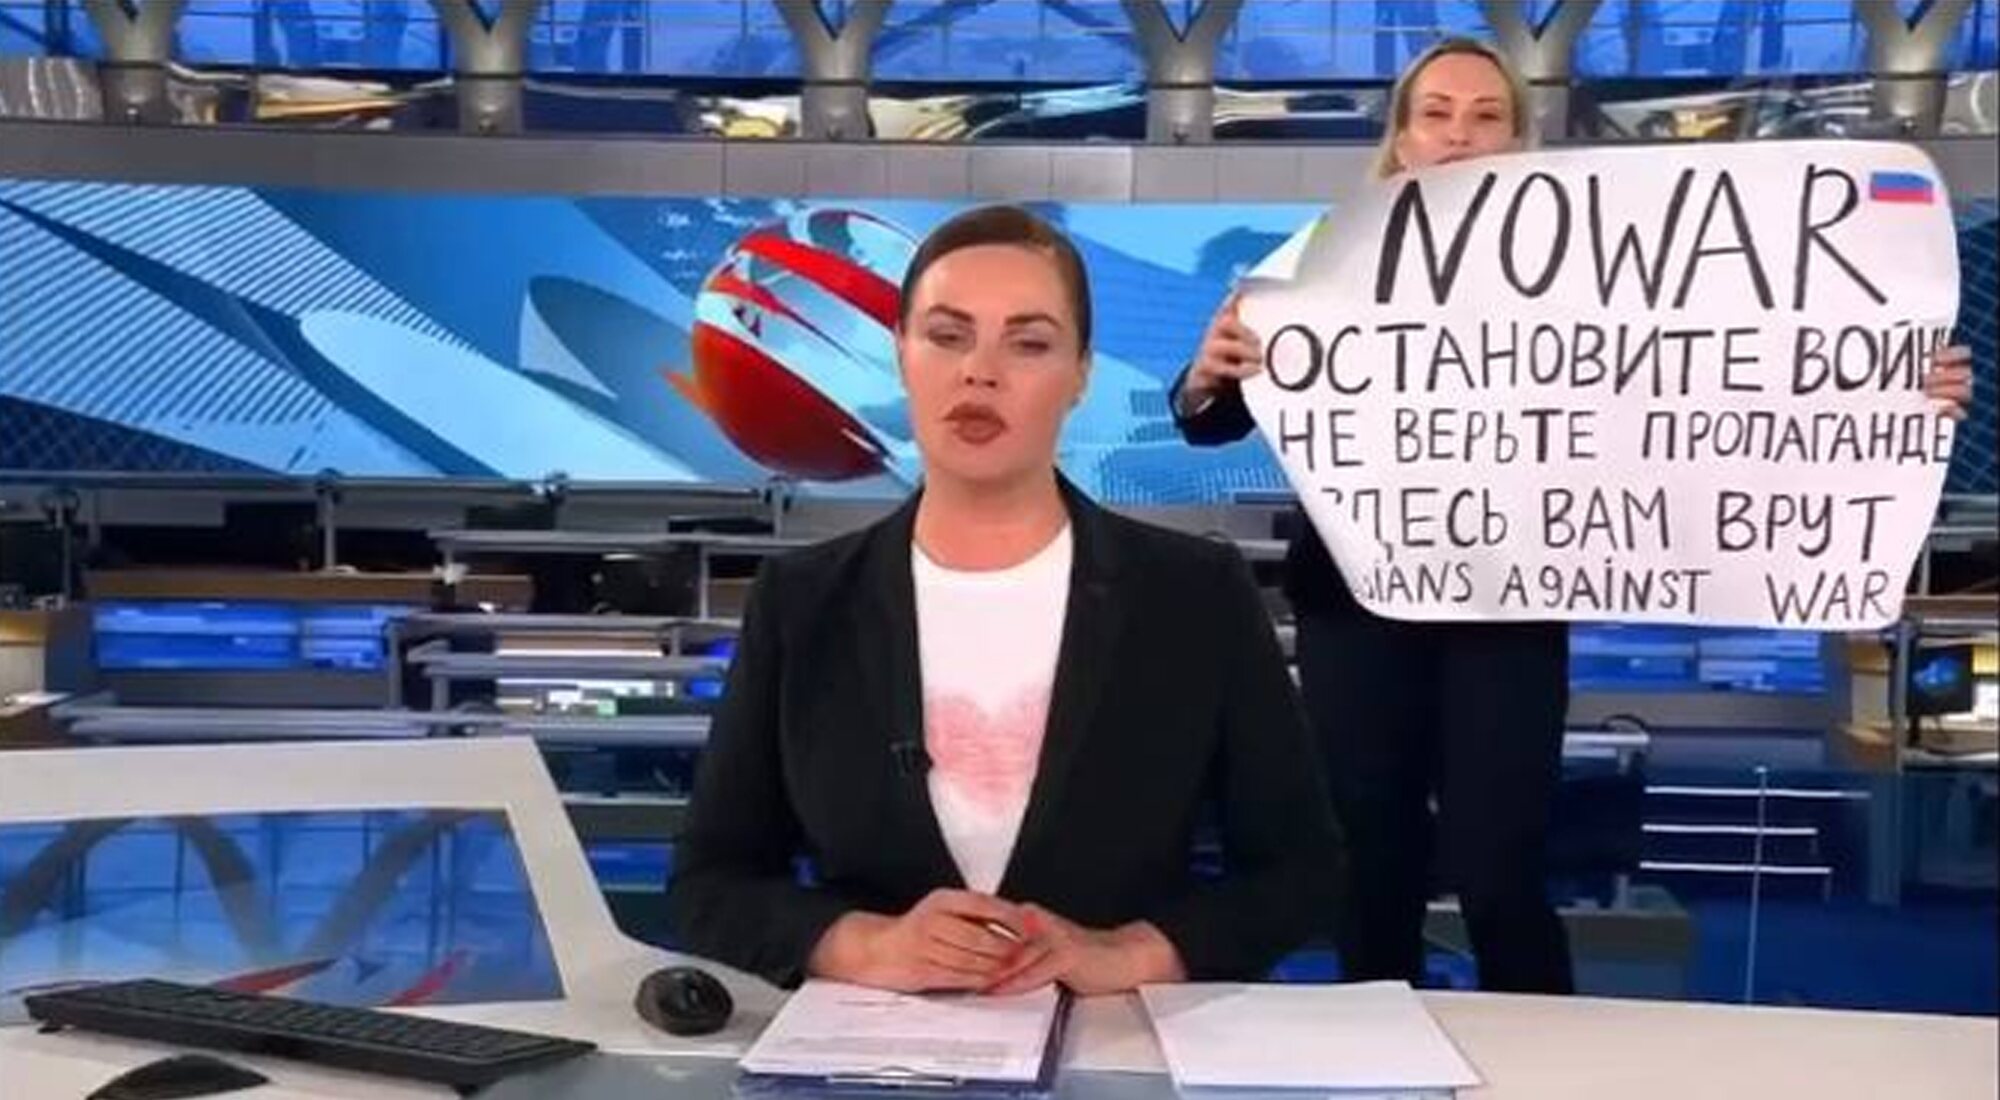 Marina Ovsyannikova irrumpe en directo en la cadena rusa Channel One contra la guerra